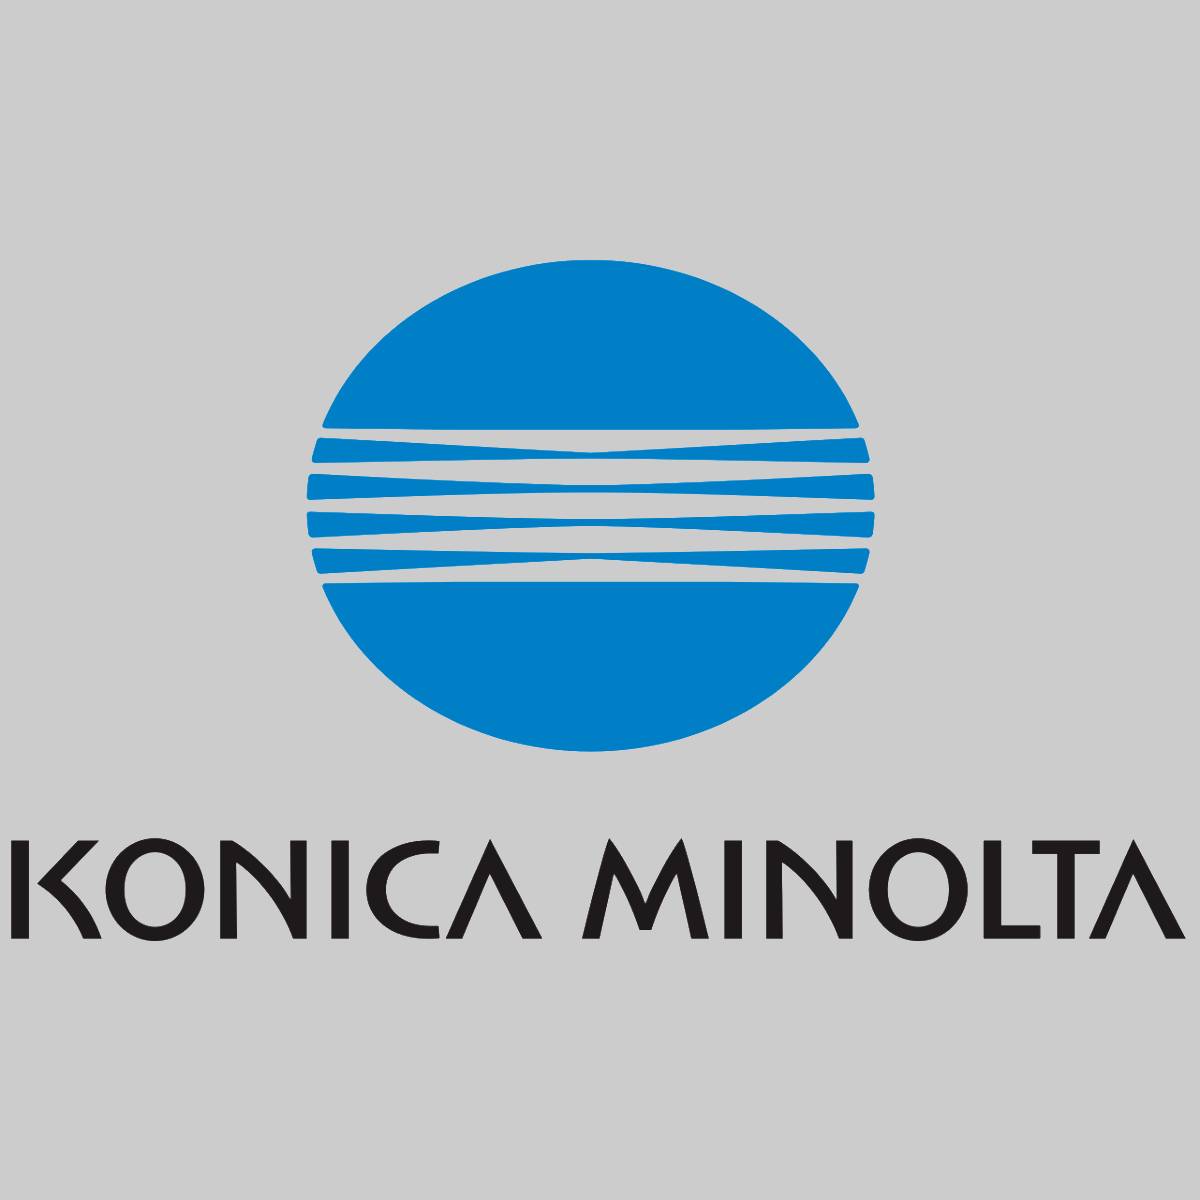 "Toner d'origine Konica Minolta cyan 1710490-004 pour Magicolor 3100 NEW OVP